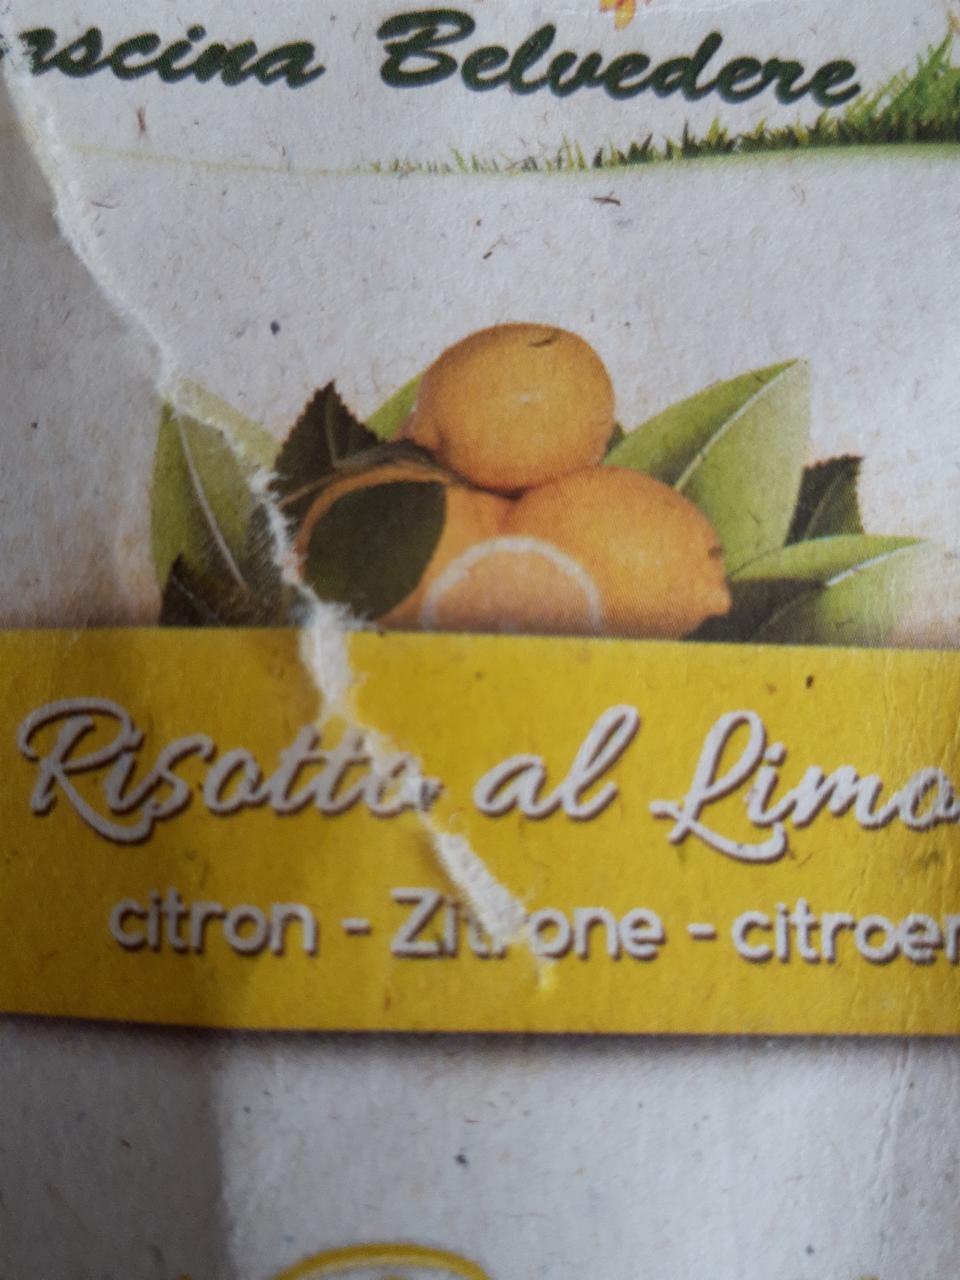 Fotografie - Risotto al Rimane citron, Cascin Belvedere